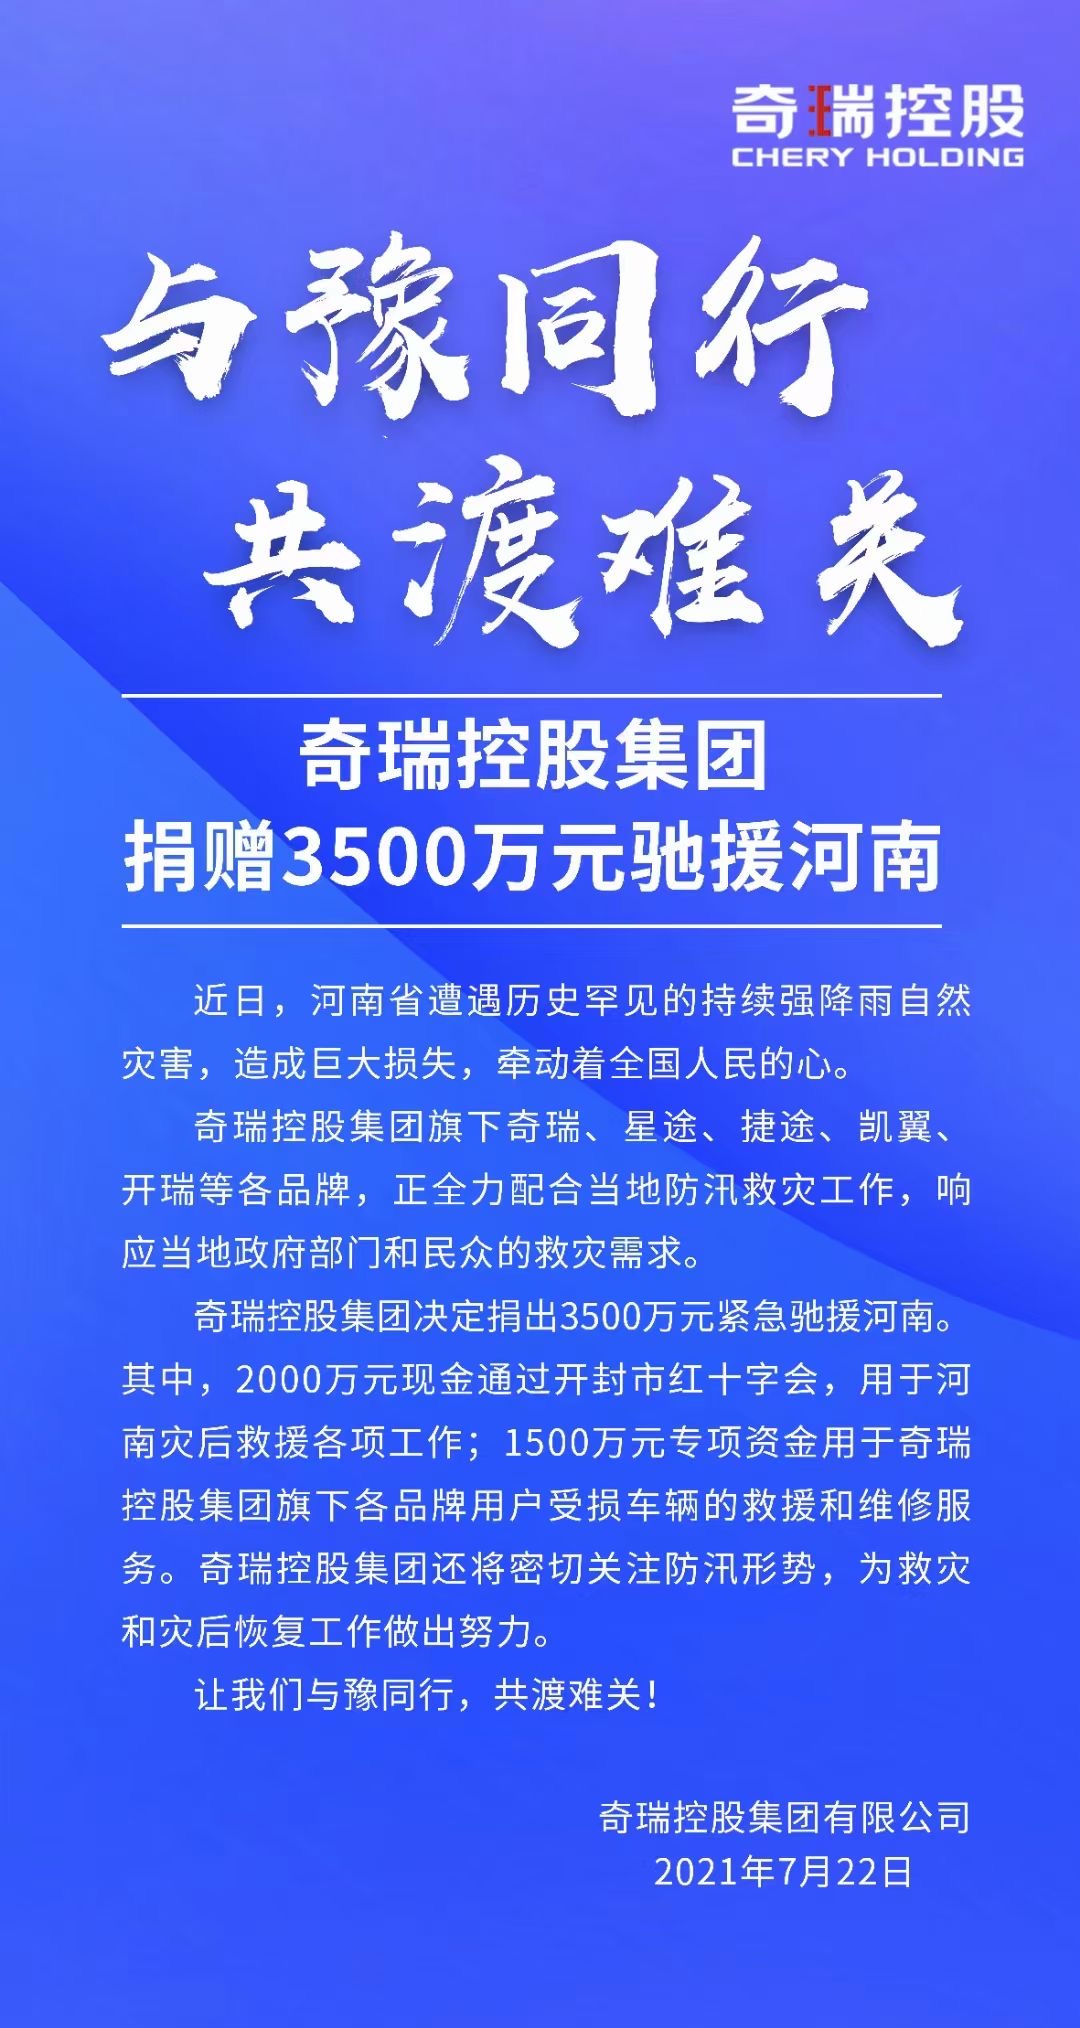 驰援河南 奇瑞控股集团捐赠3500万元